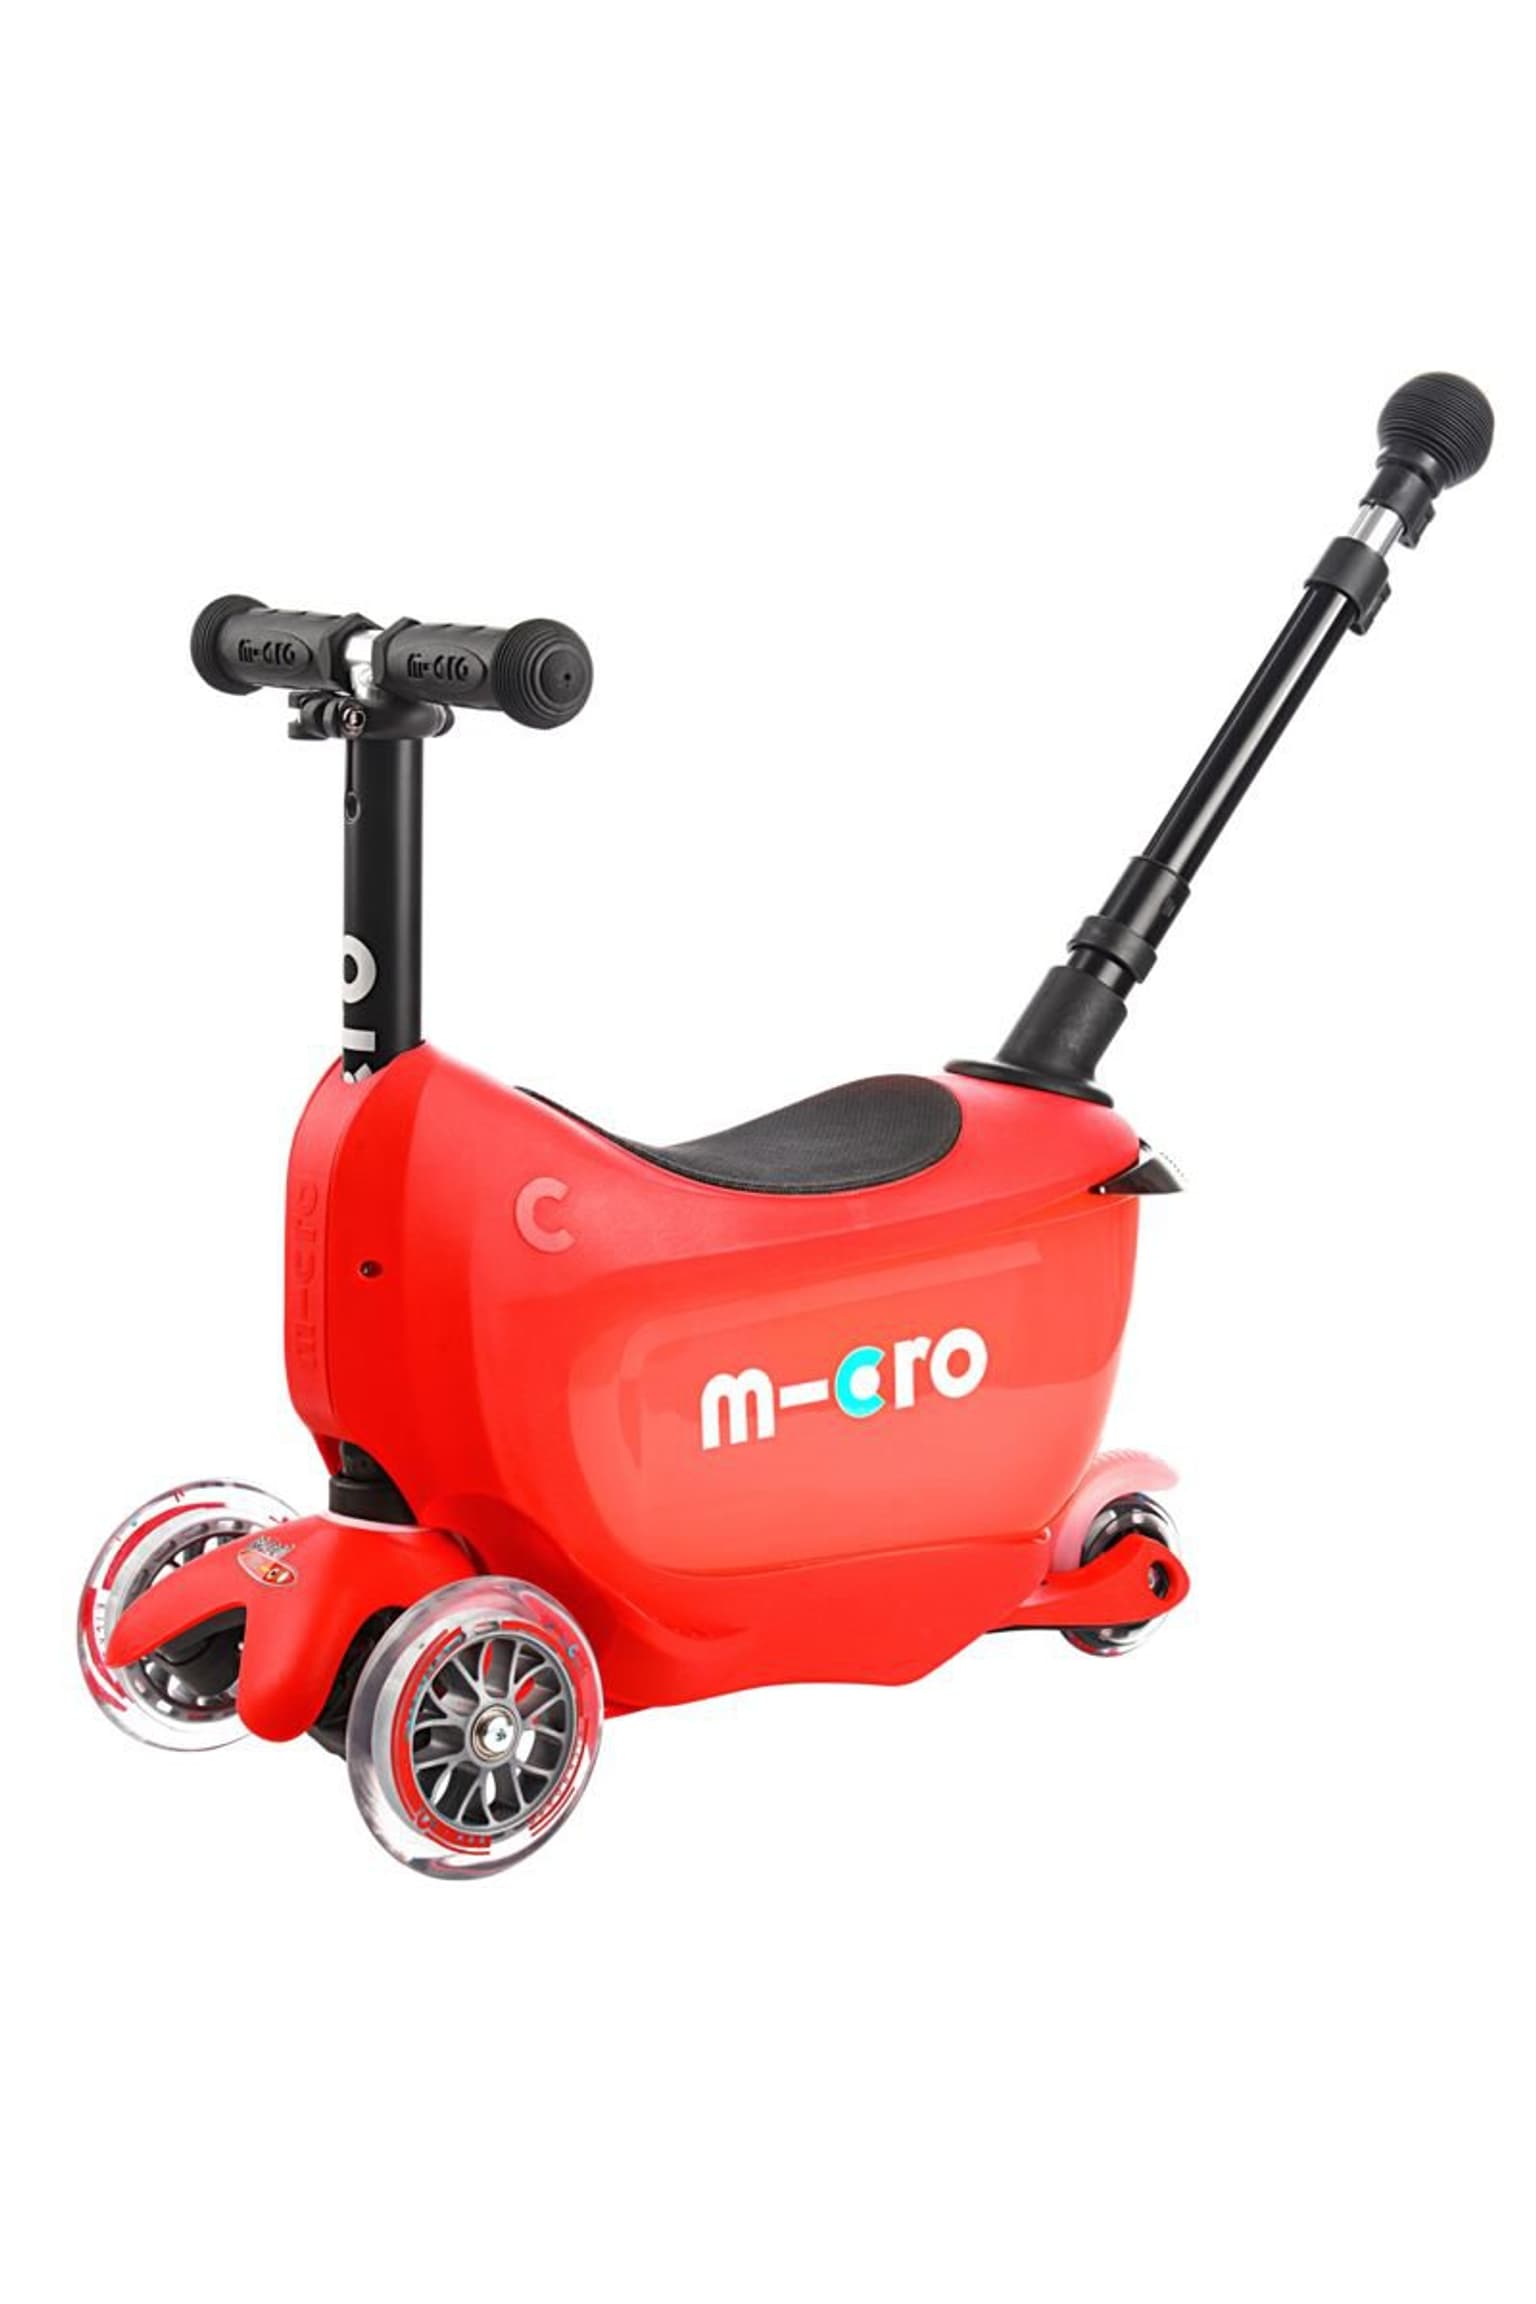 Micro Micro Mini2go Deluxe Plus Scooter 7